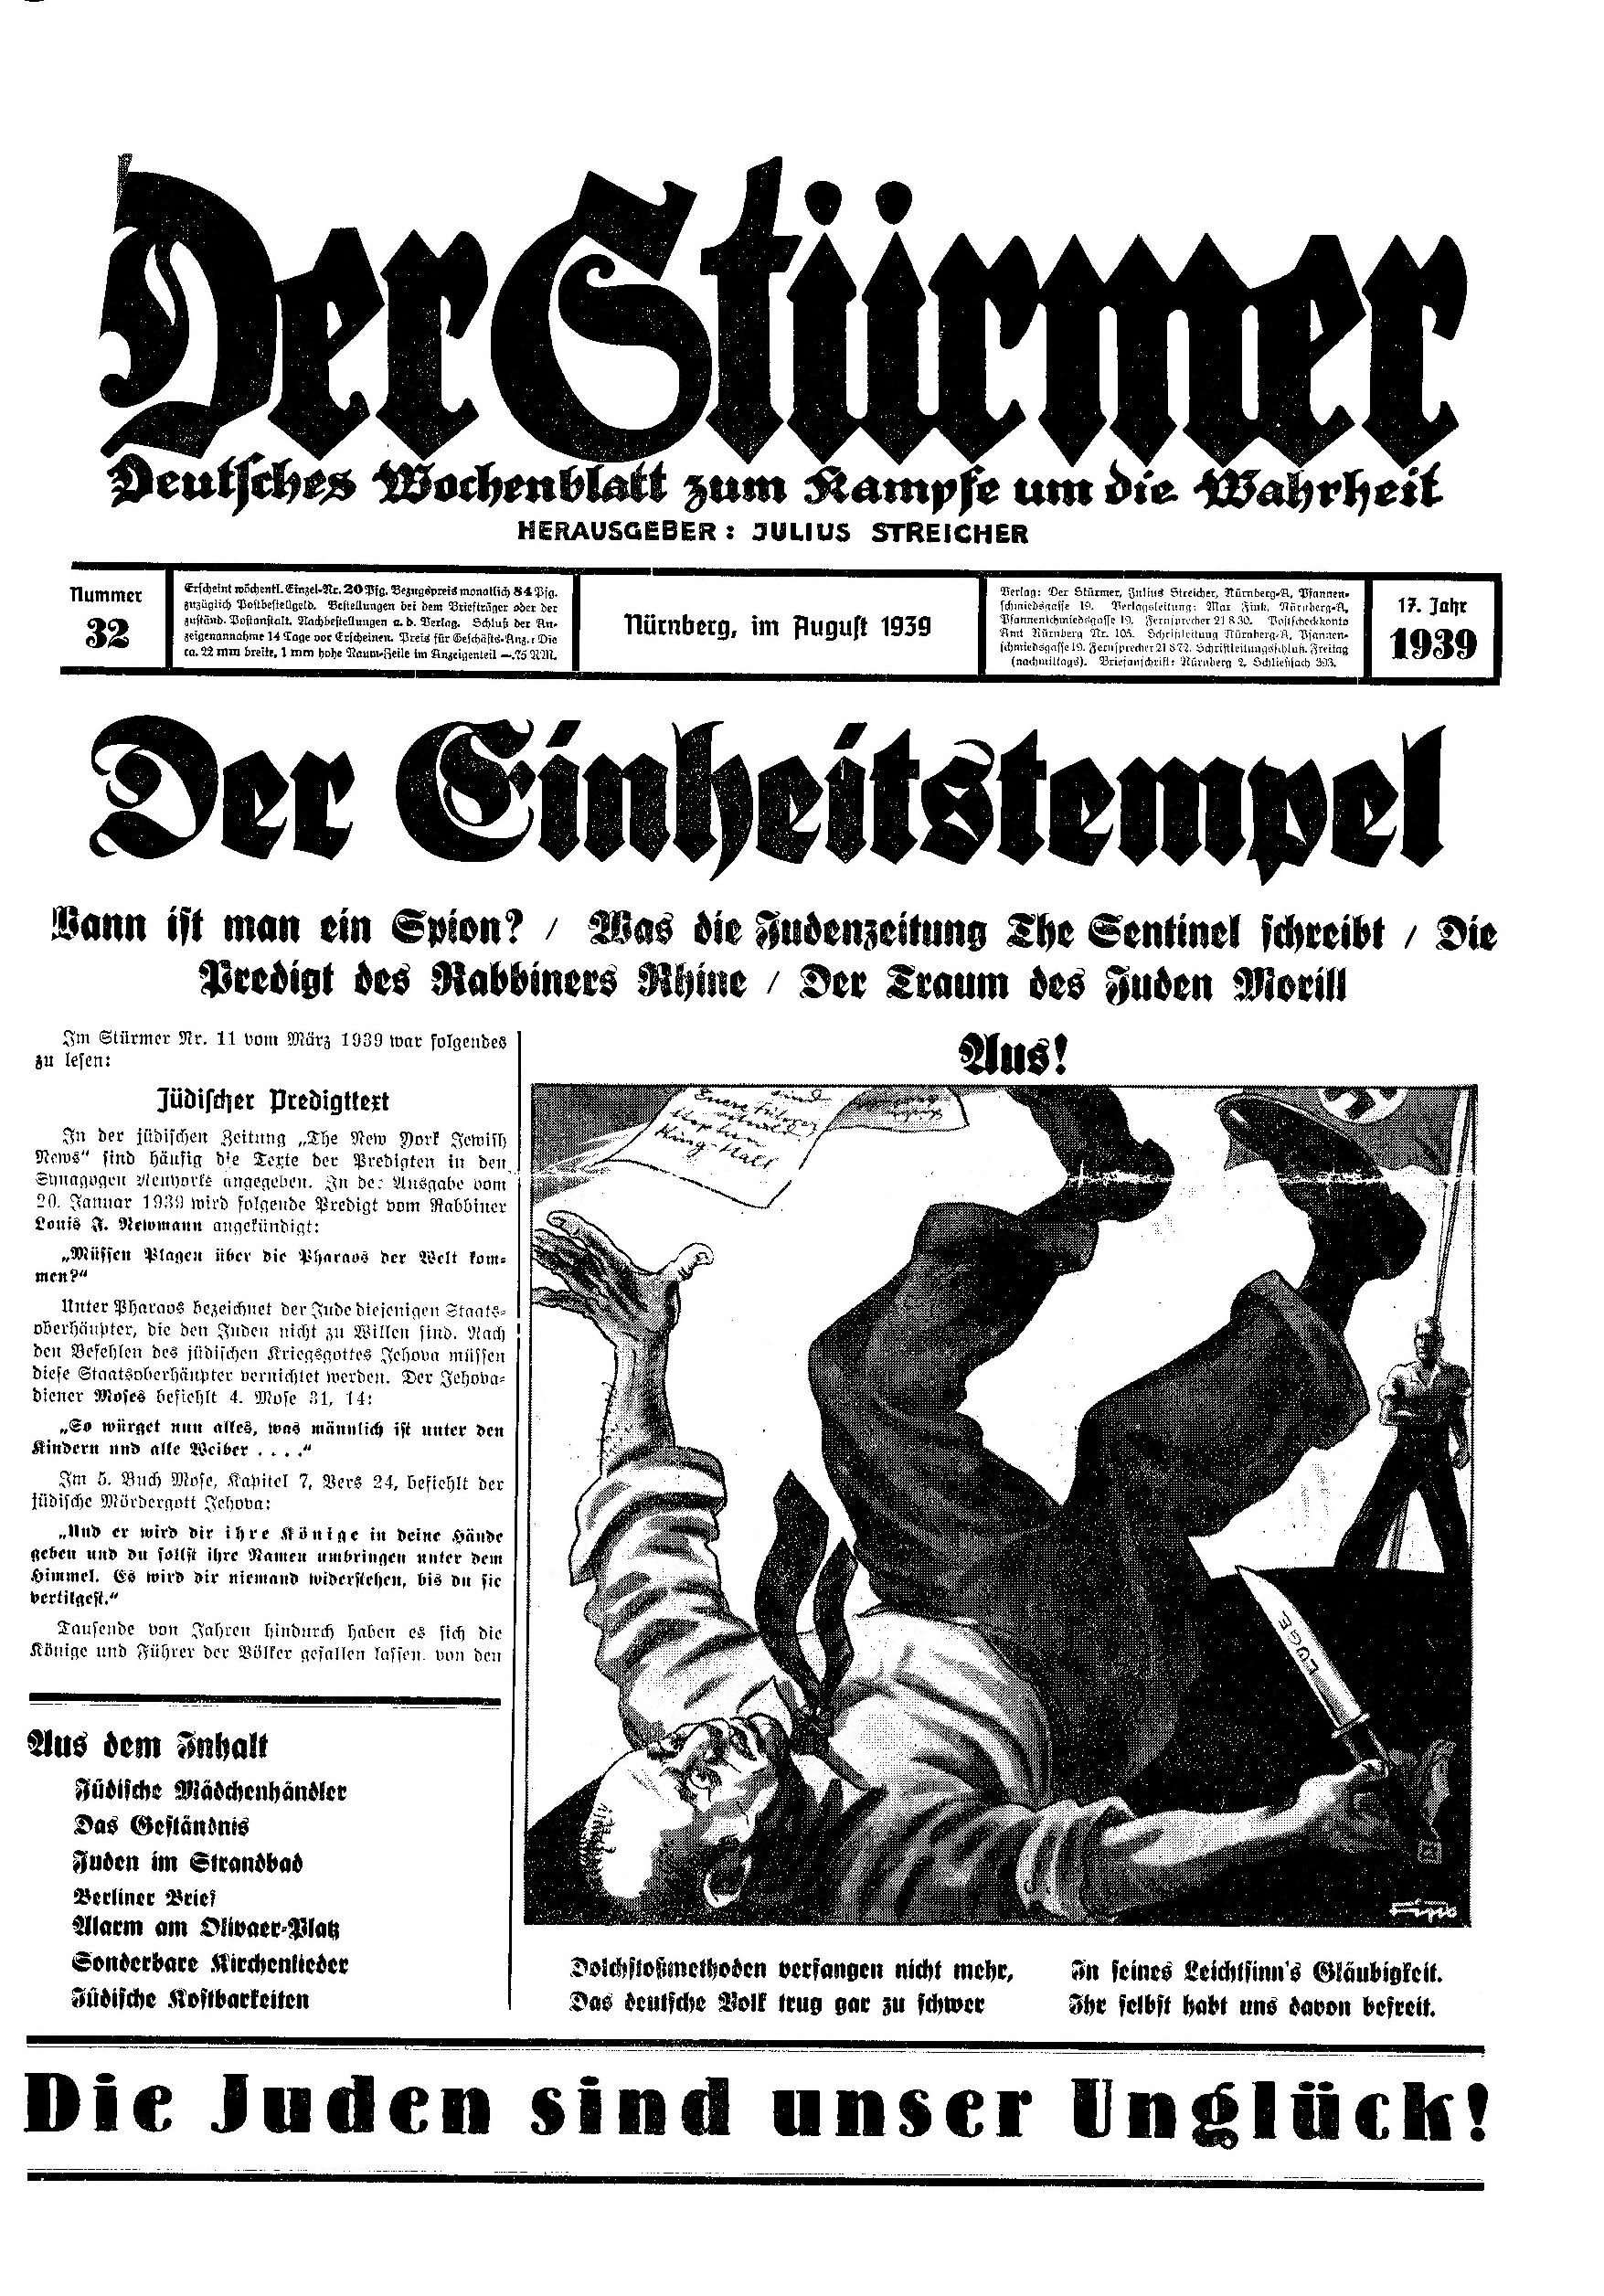 Der Stürmer - 1939 Nr. 32 - Der Einheitstempel